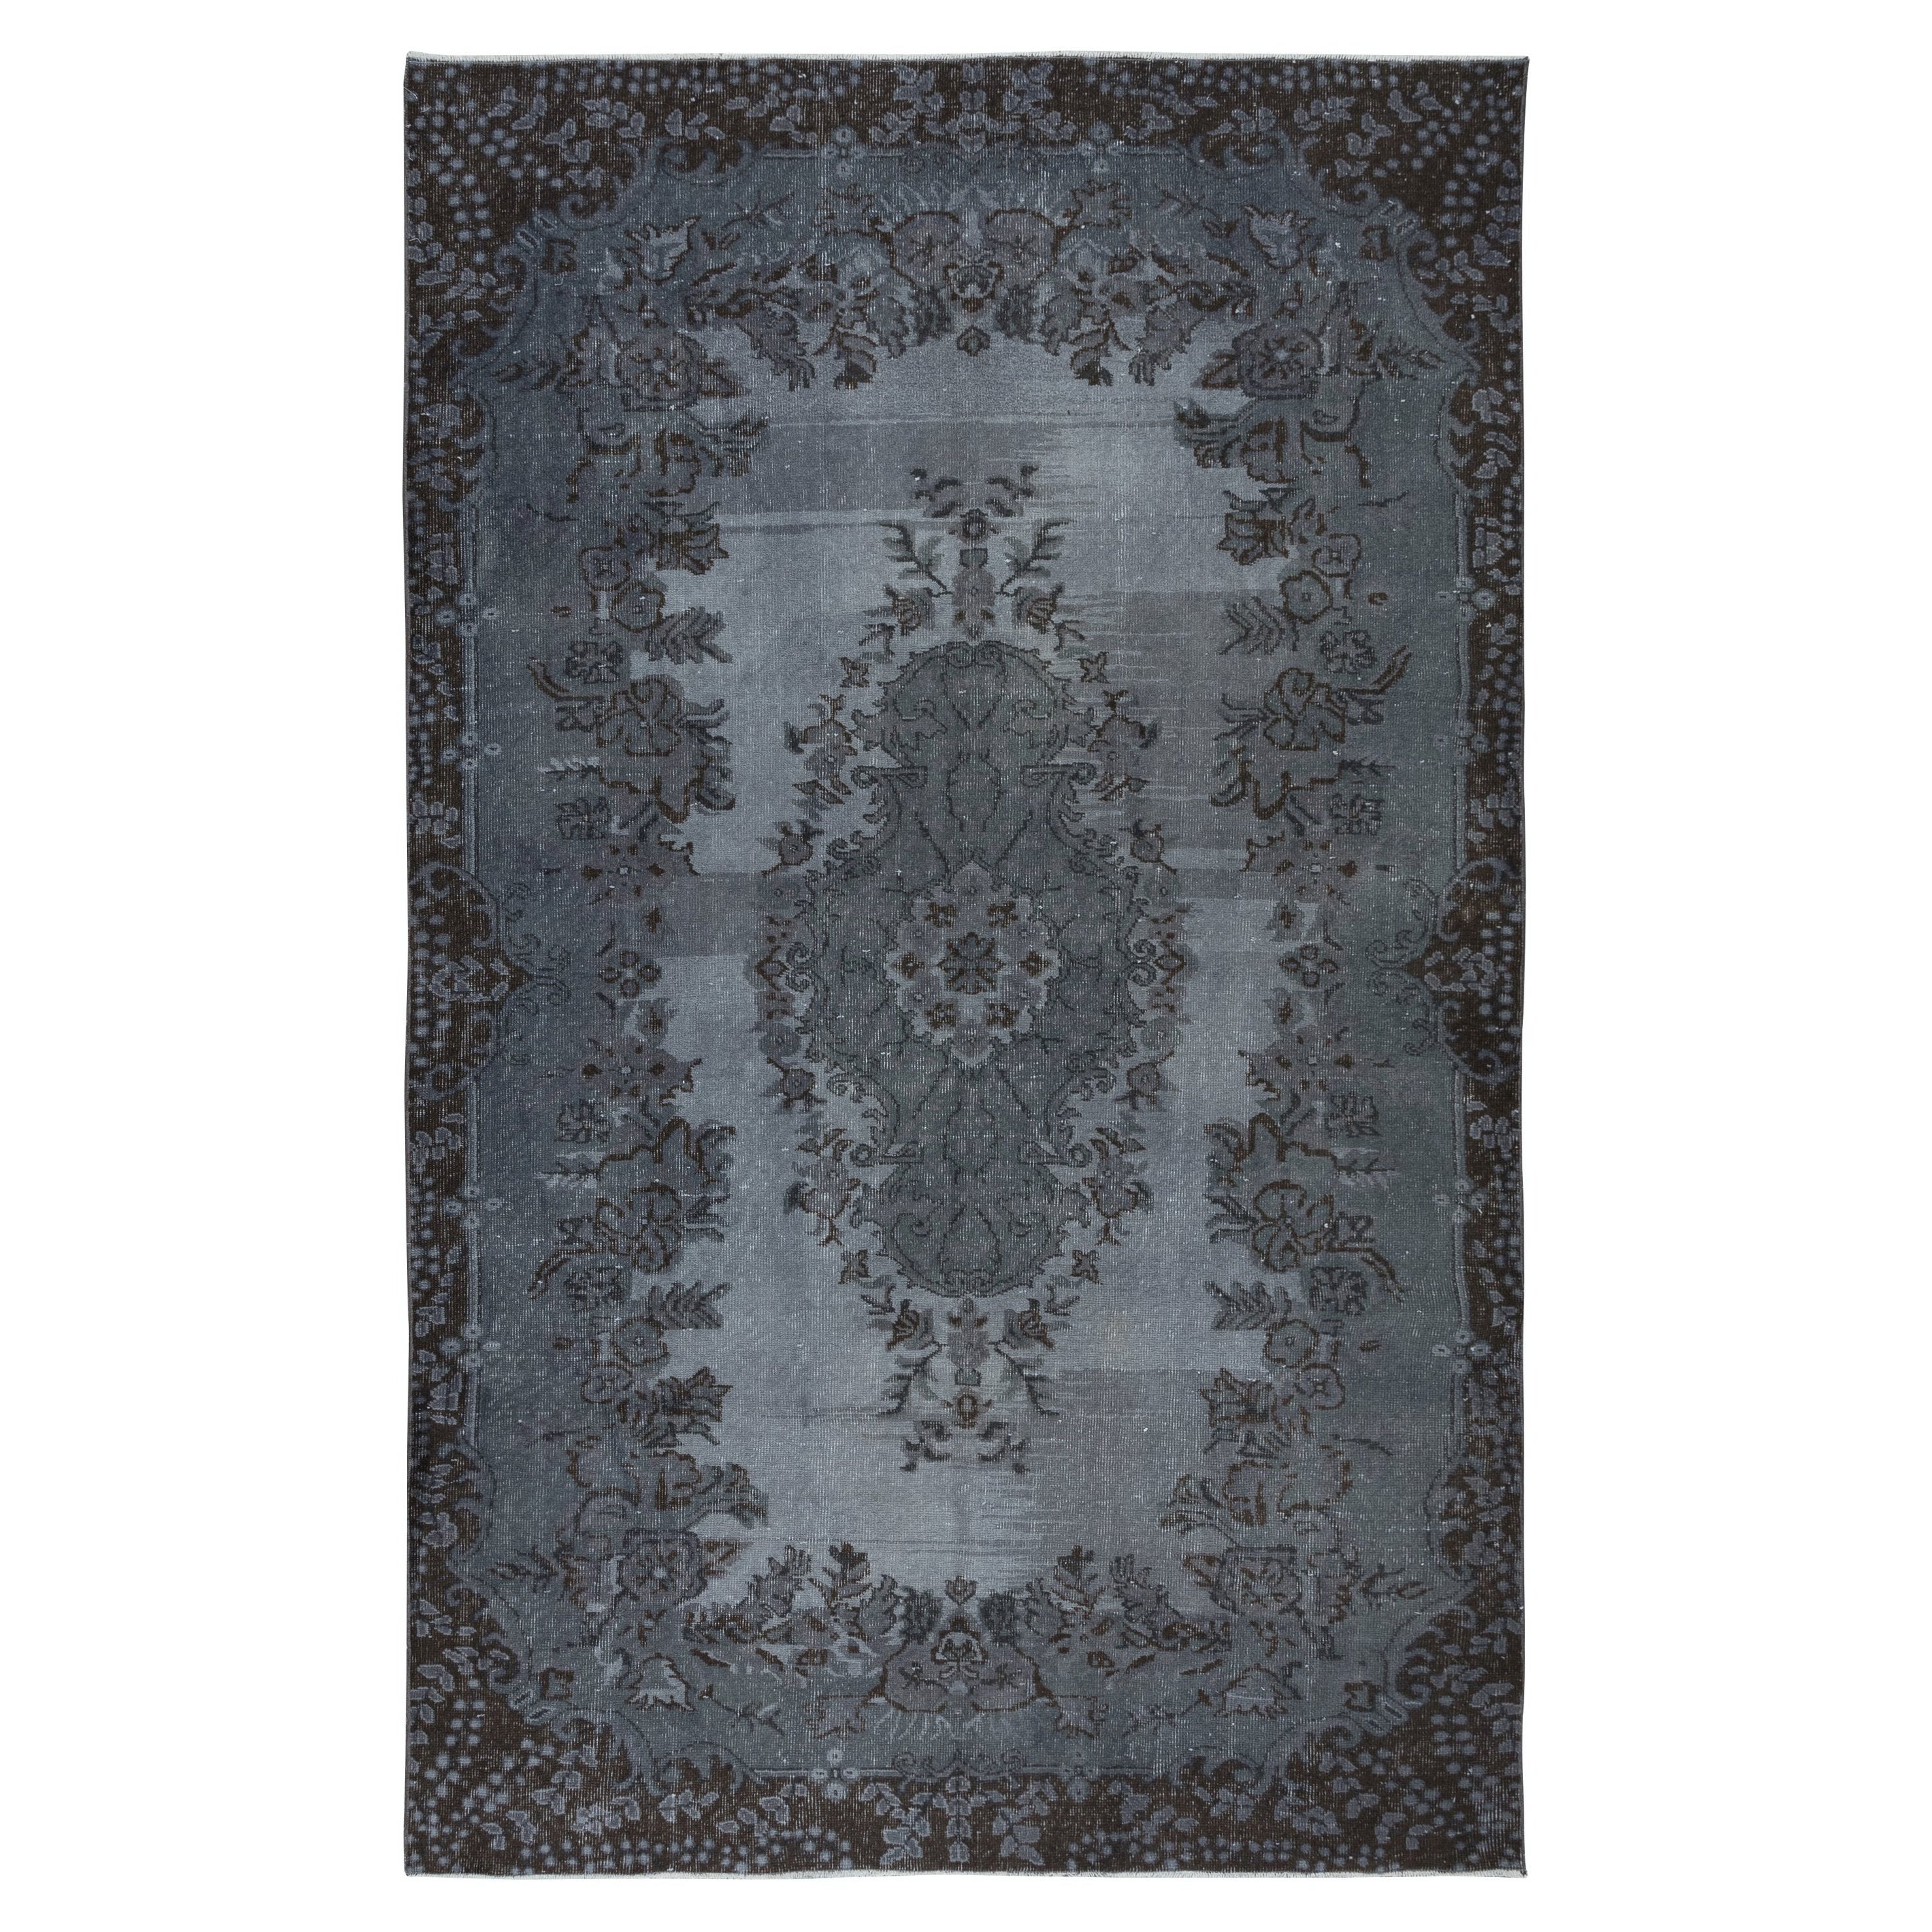 Handgefertigter grauer Teppich mit 6.3x10 Ft mit Medaillon-Design. Moderner türkischer Teppich im Angebot